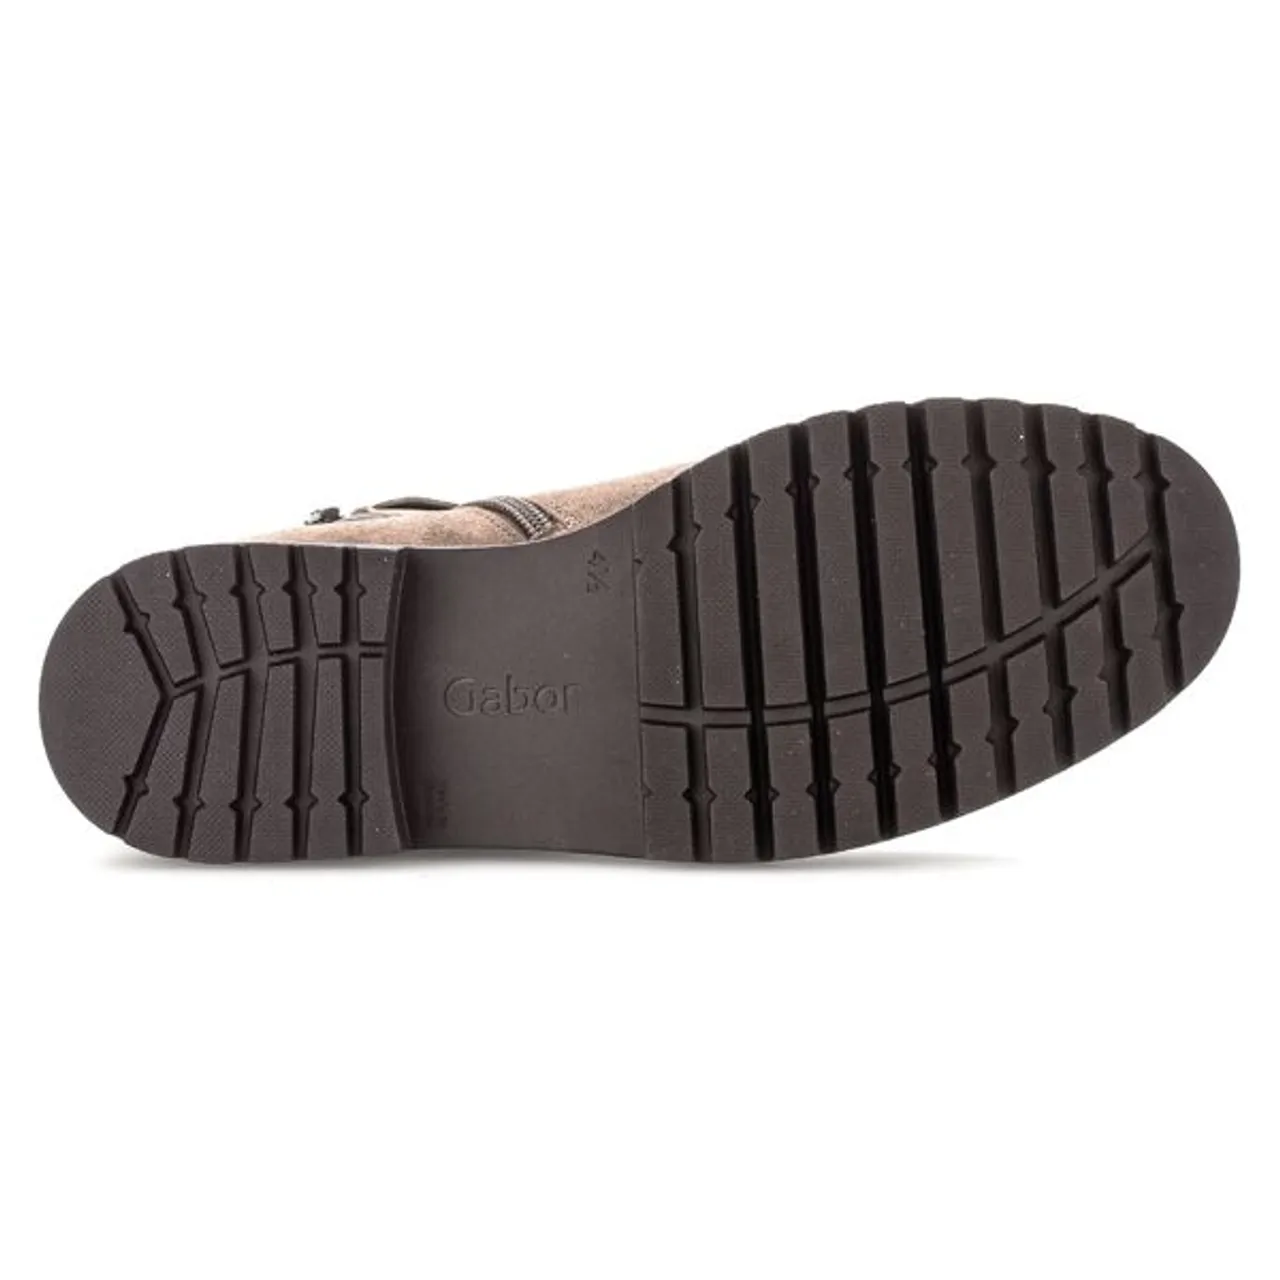 Stiefelette GABOR "Davos" Gr. 42, grau (taupe) Damen Schuhe Reißverschlussstiefeletten mit Komfortweite H (sehr weit)